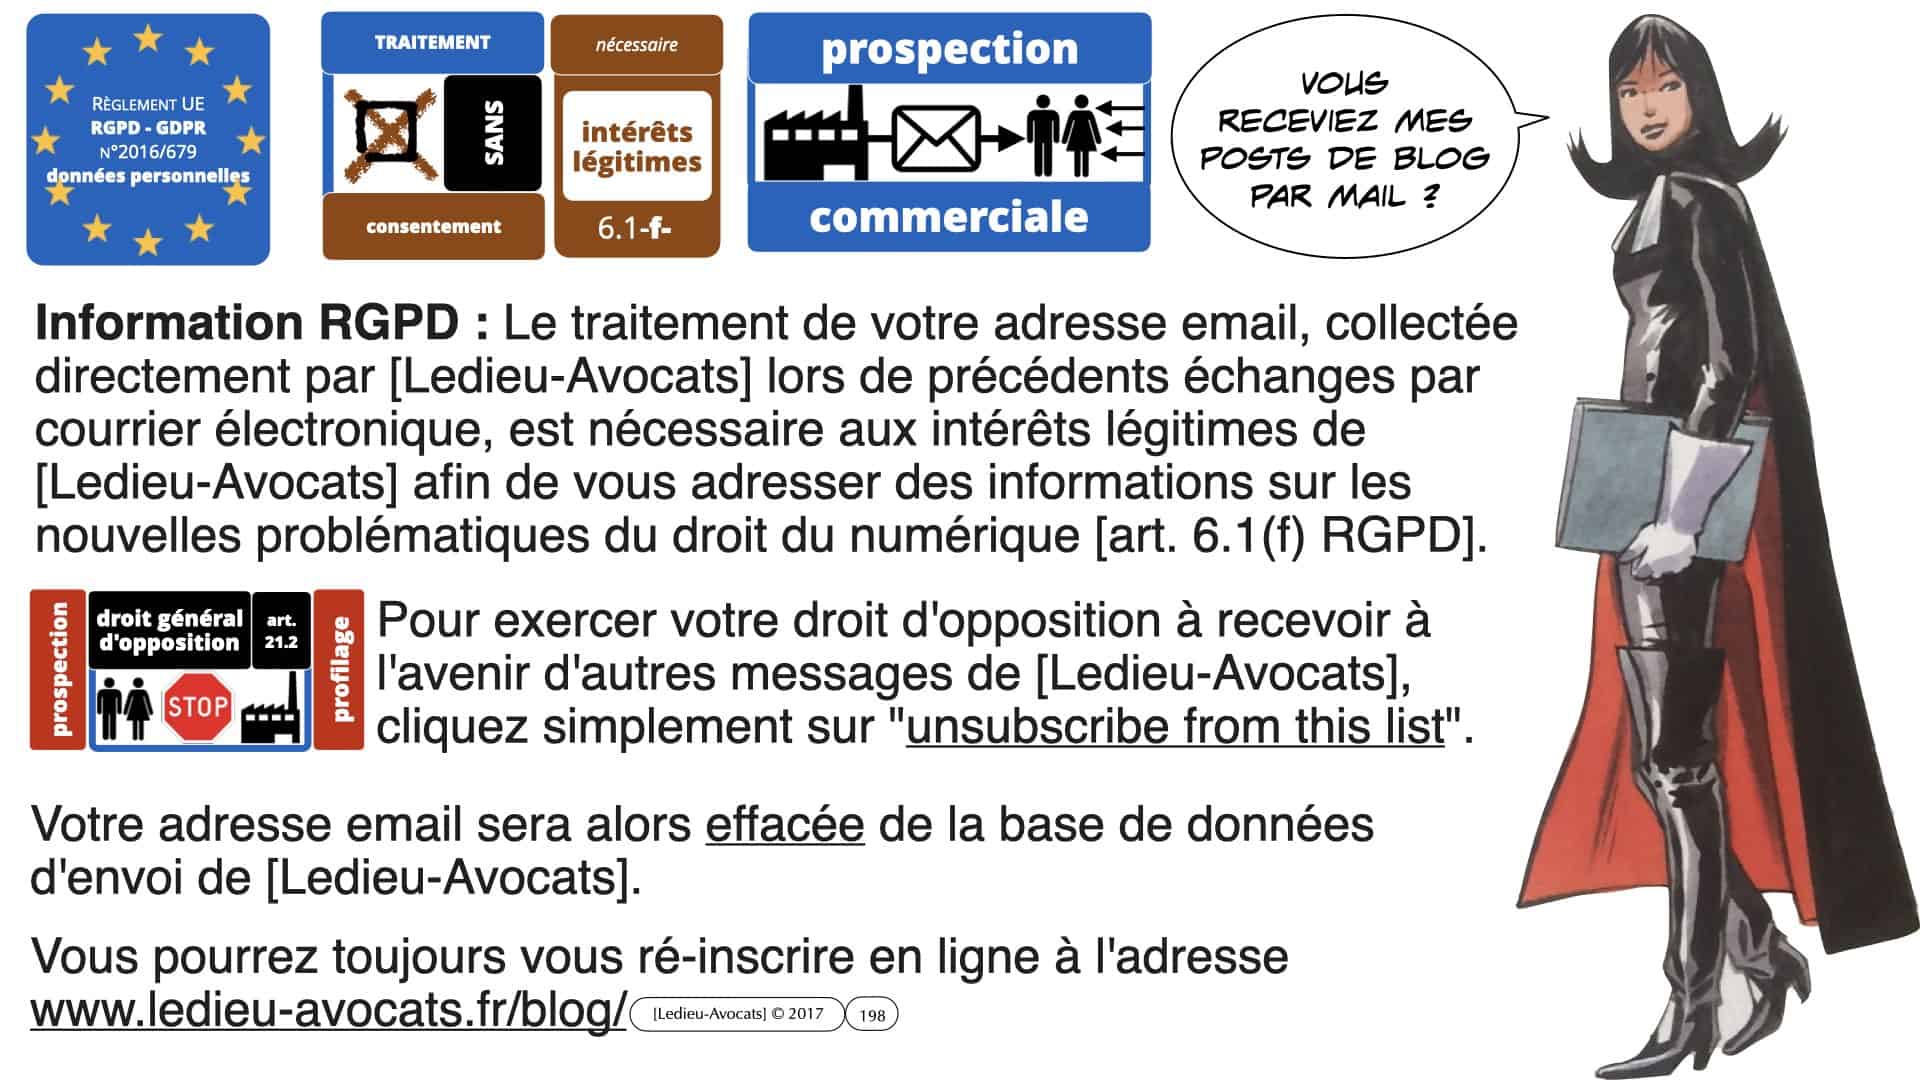 RGPD e-Privacy données personnelles jurisprudence formation Lamy Les Echos 10-02-2021 ©Ledieu-Avocats.198